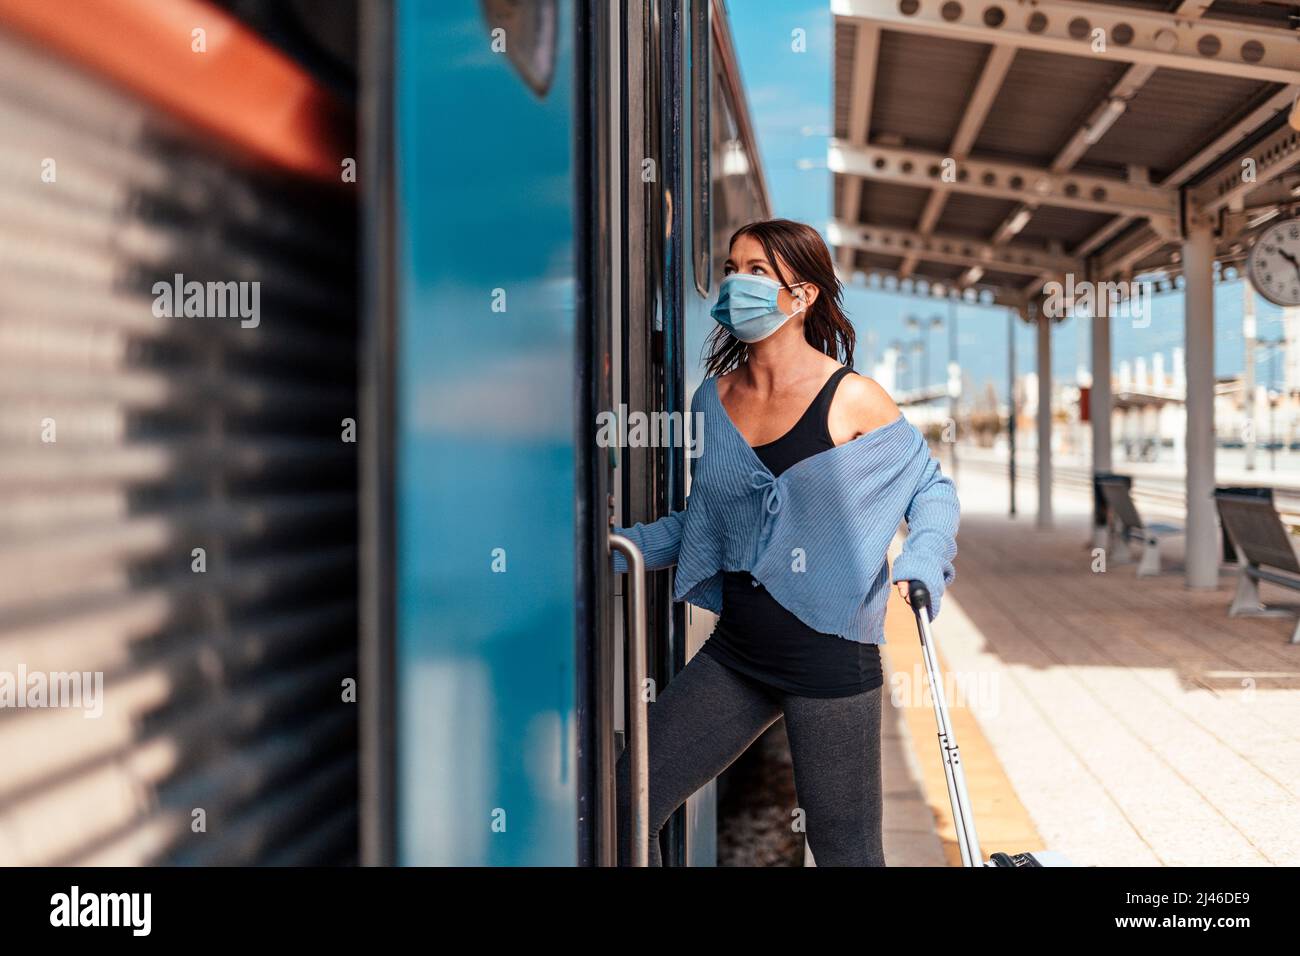 Una mujer joven con máscara protectora que se va al tren con un equipaje Foto de stock